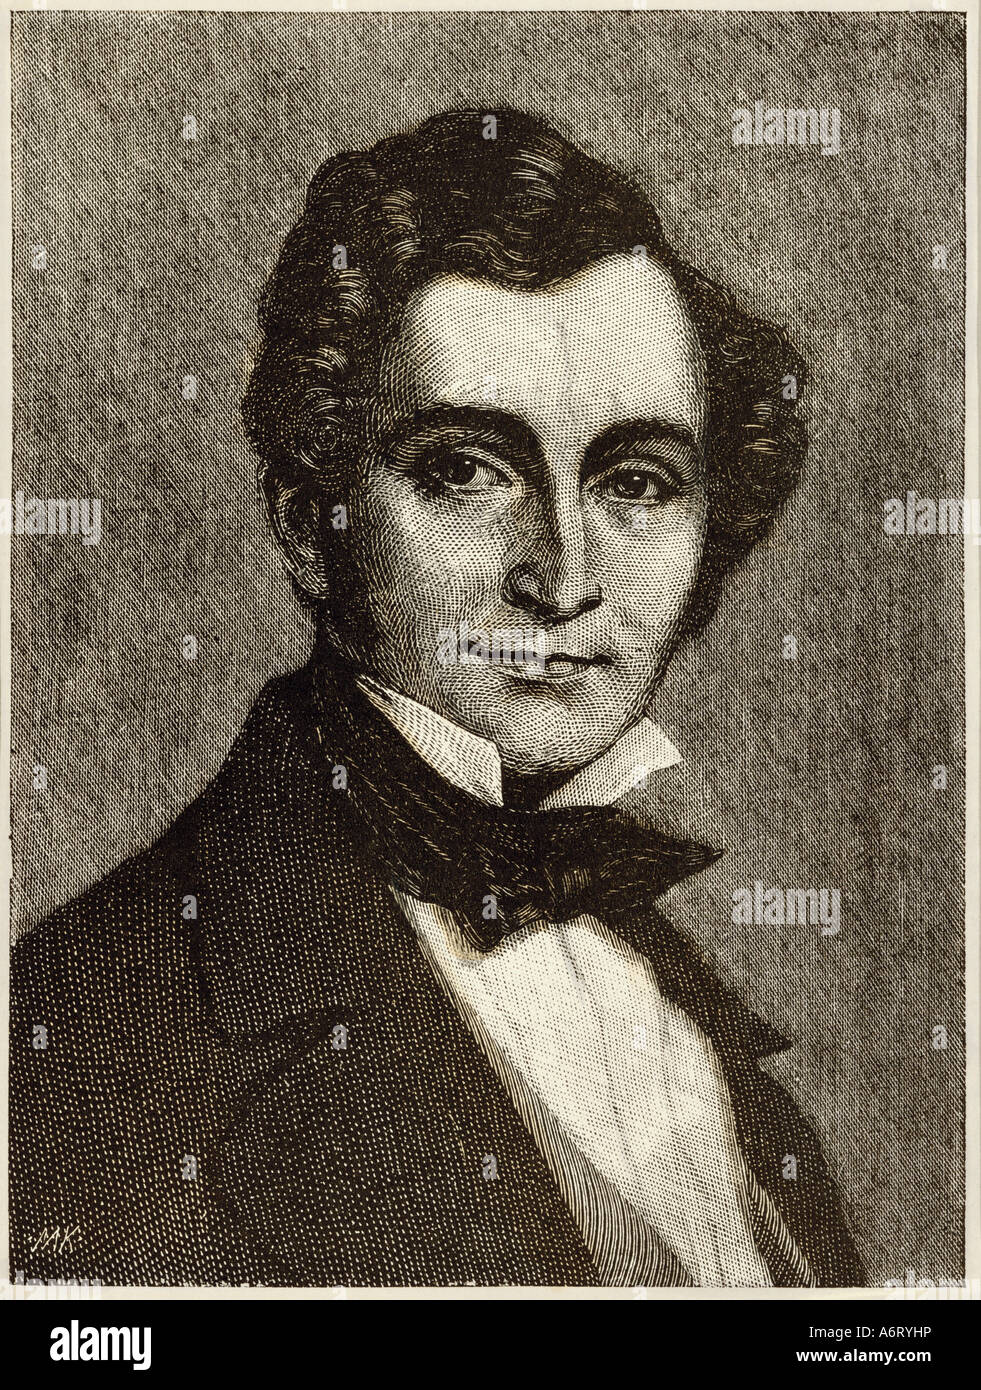 Lortzing, Albert, 23.10.1801 - 21.1.1851, Porträt, Kupferstich von Moritz Klinkicht, um 1900, Deutschland, 19. Jahrhundert Stockfoto